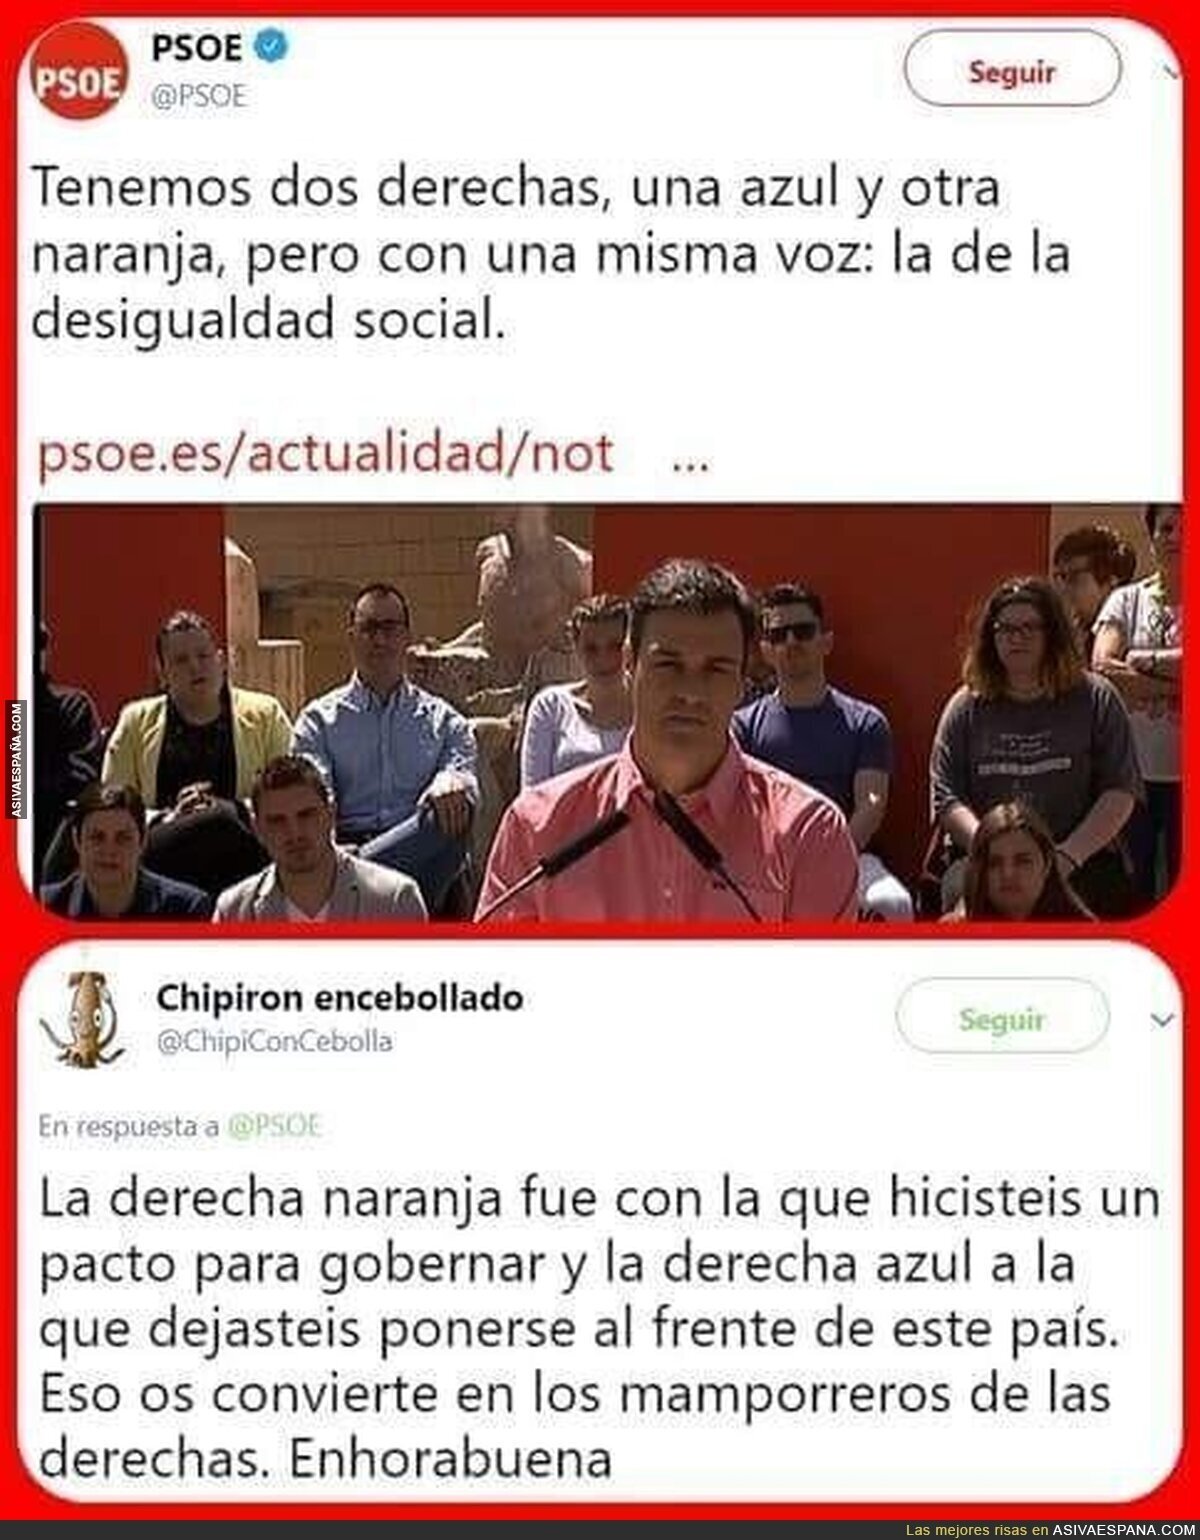 Pedro Sánchez se lleva una bofetada sin manos tras atacar a Ciudadanos diciendo que son 'la derecha'